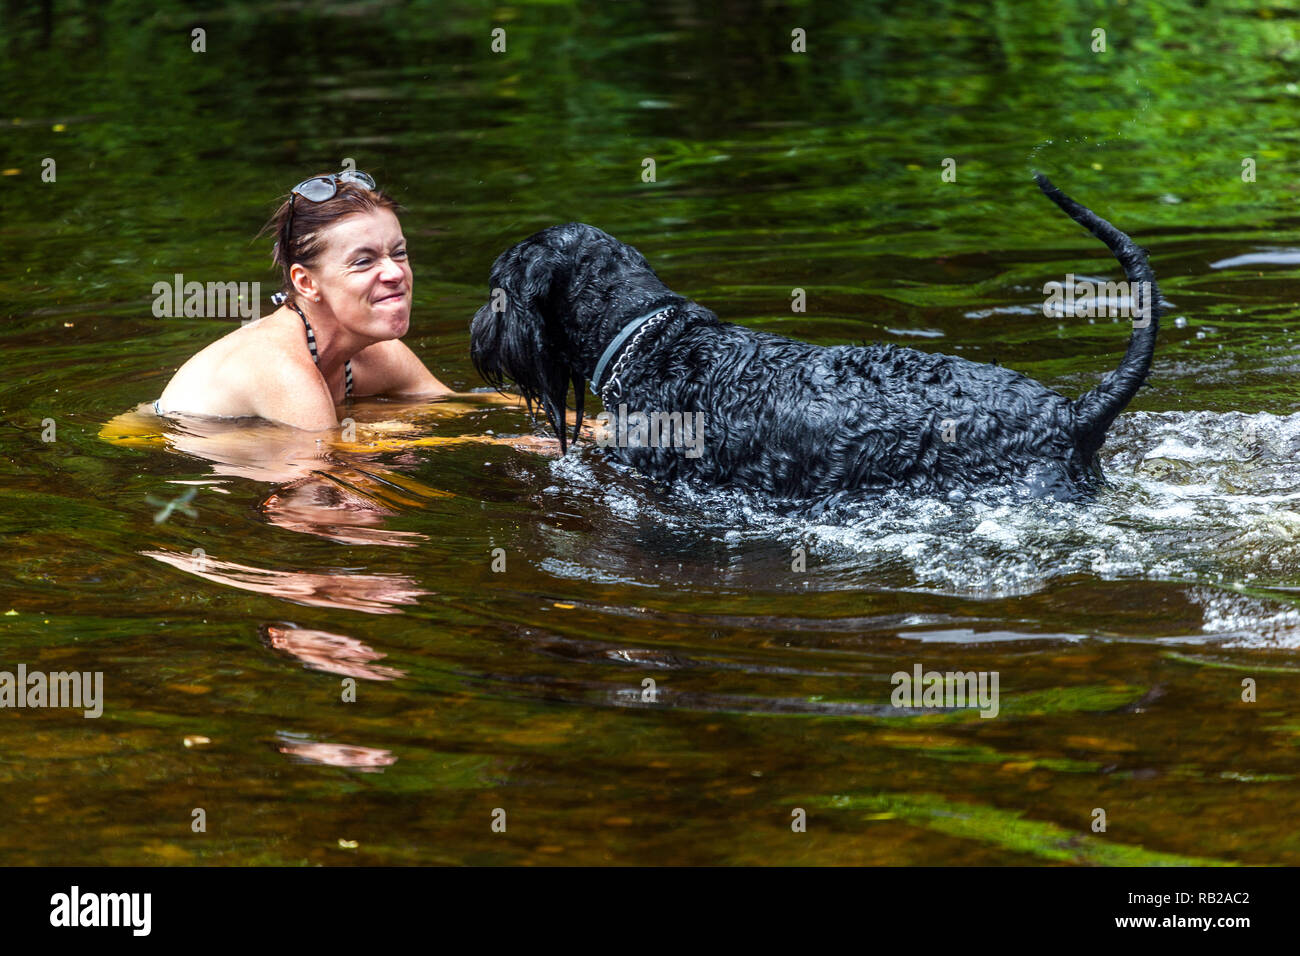 La donna gioca con un cane schnauzer in acqua, le vacanze estive al fiume, la donna della Repubblica Ceca l'acqua del cane Foto Stock